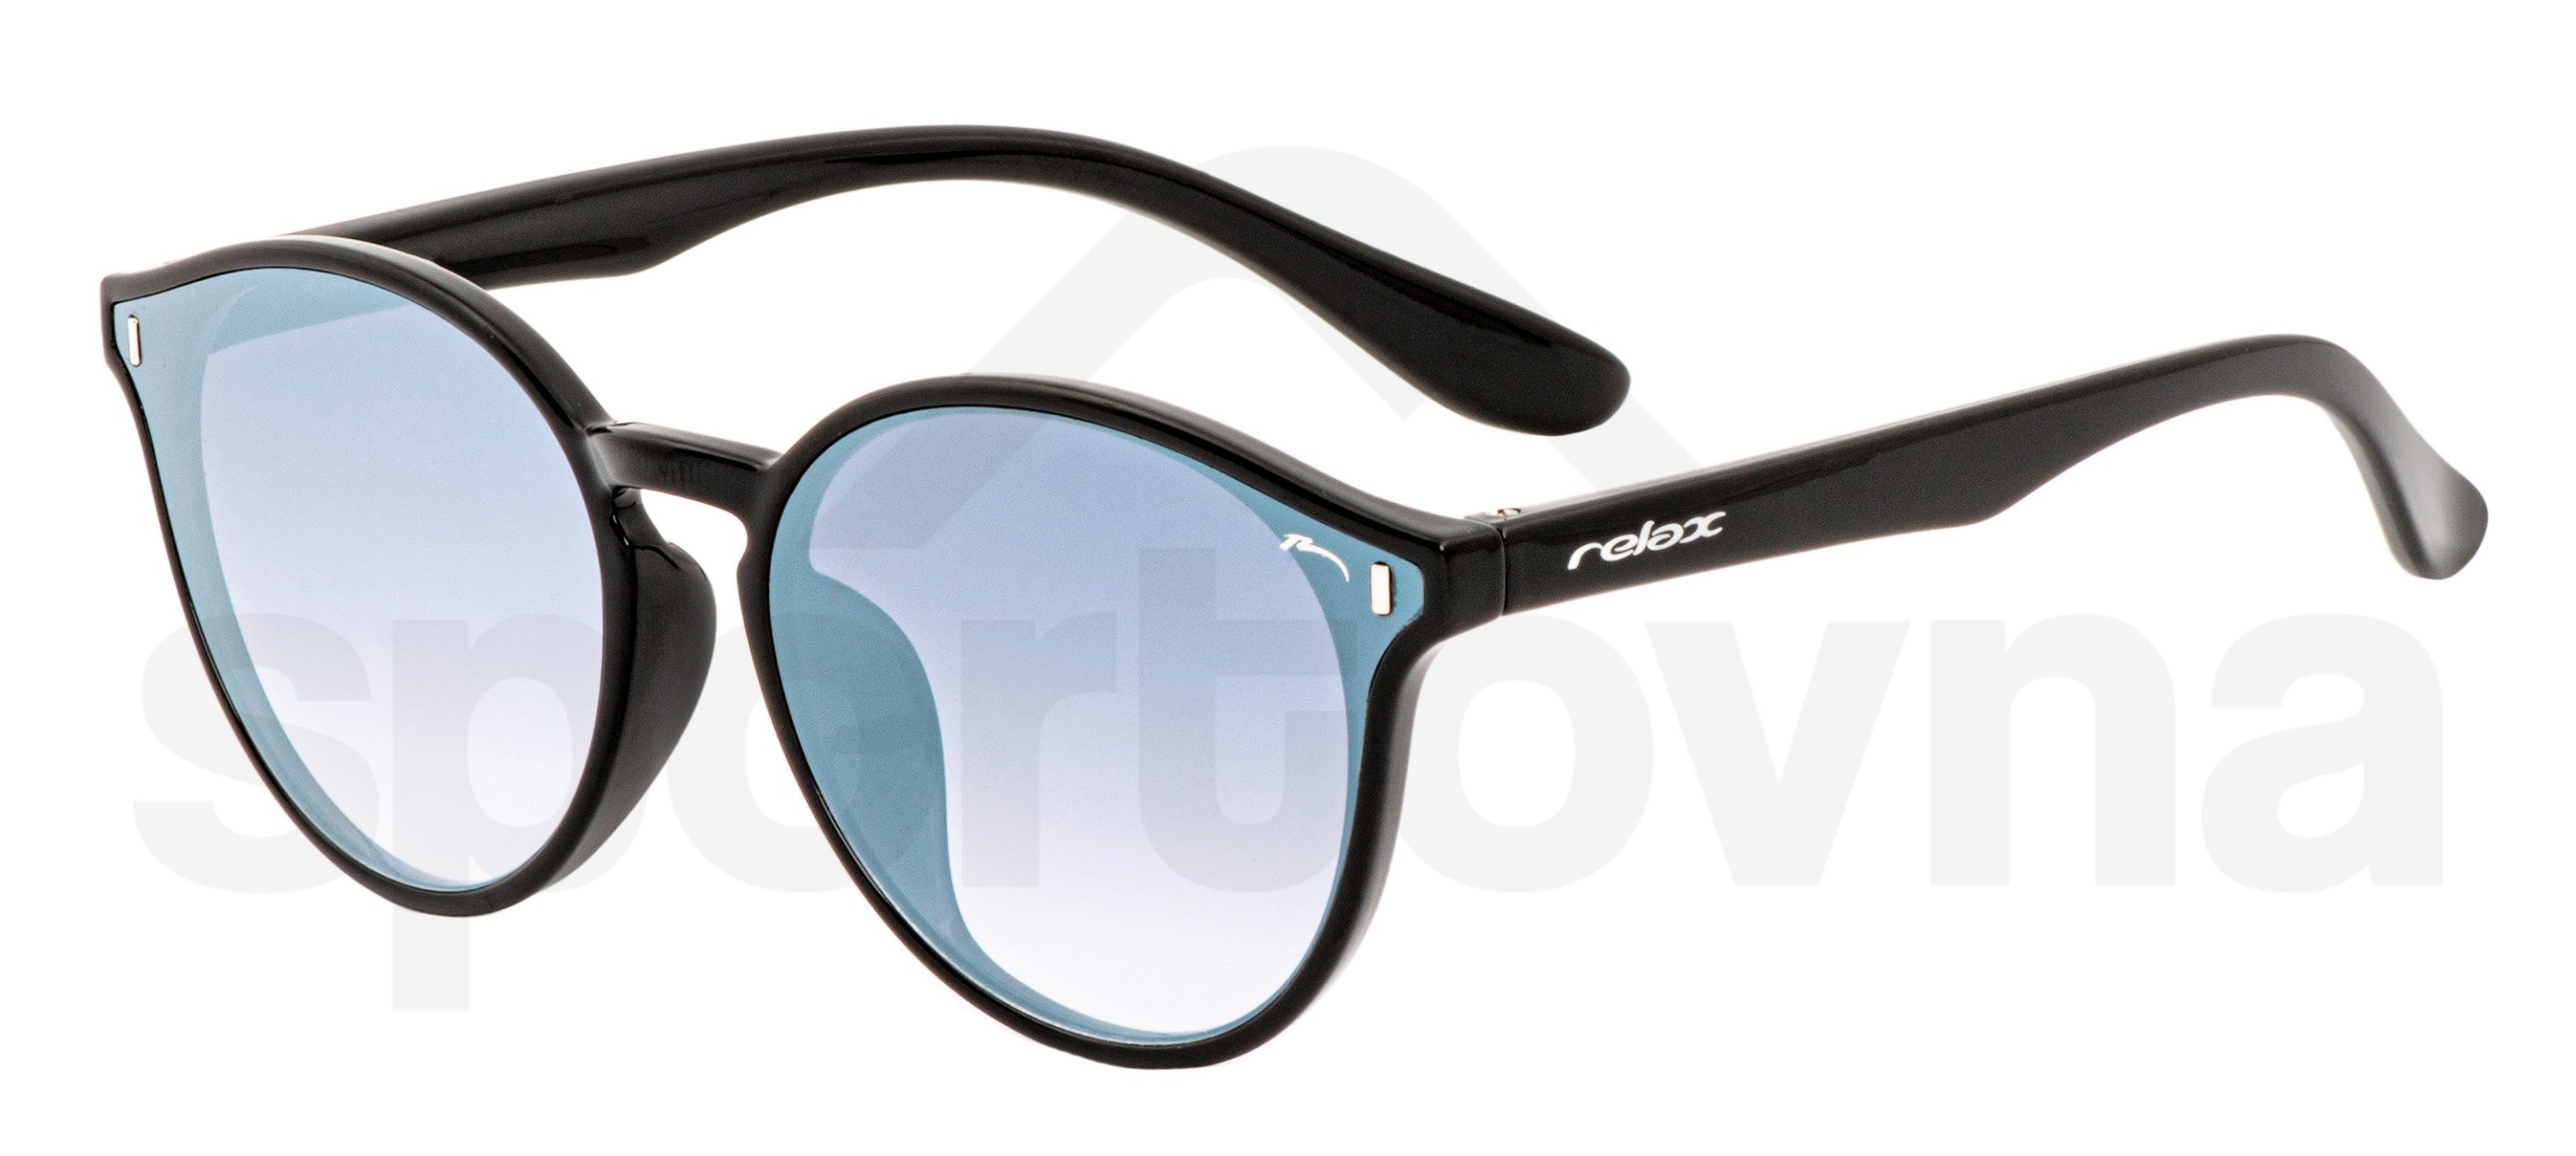 Sportovní brýle Relax Majuro - černá